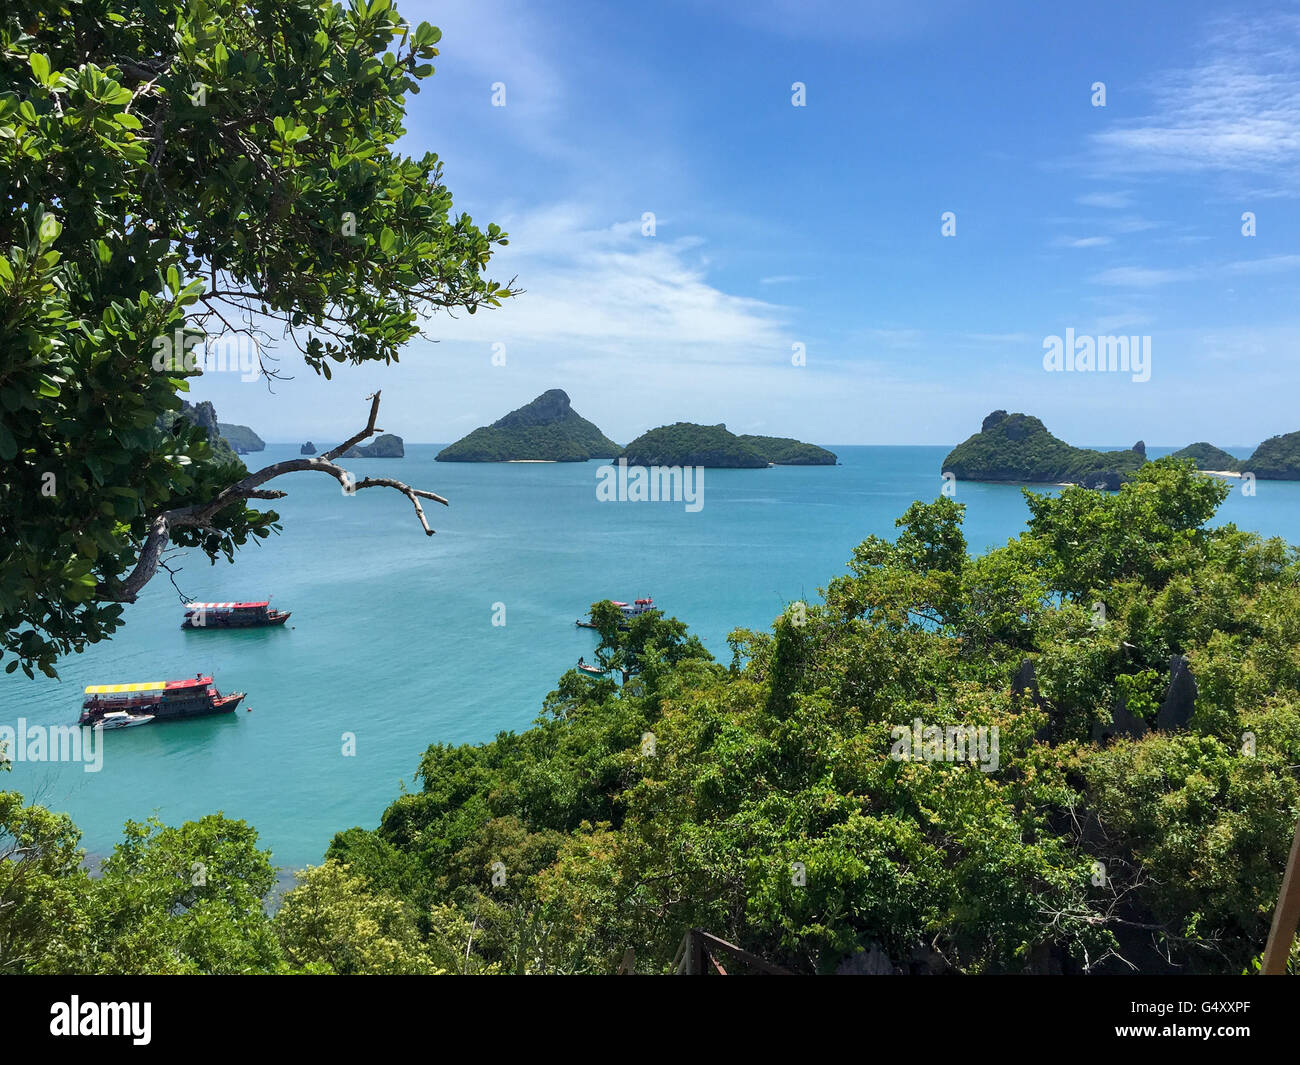 Thailand, Surat Thani, Ko Samui, On Ko Samui many islands surrounded by turquoise water Stock Photo